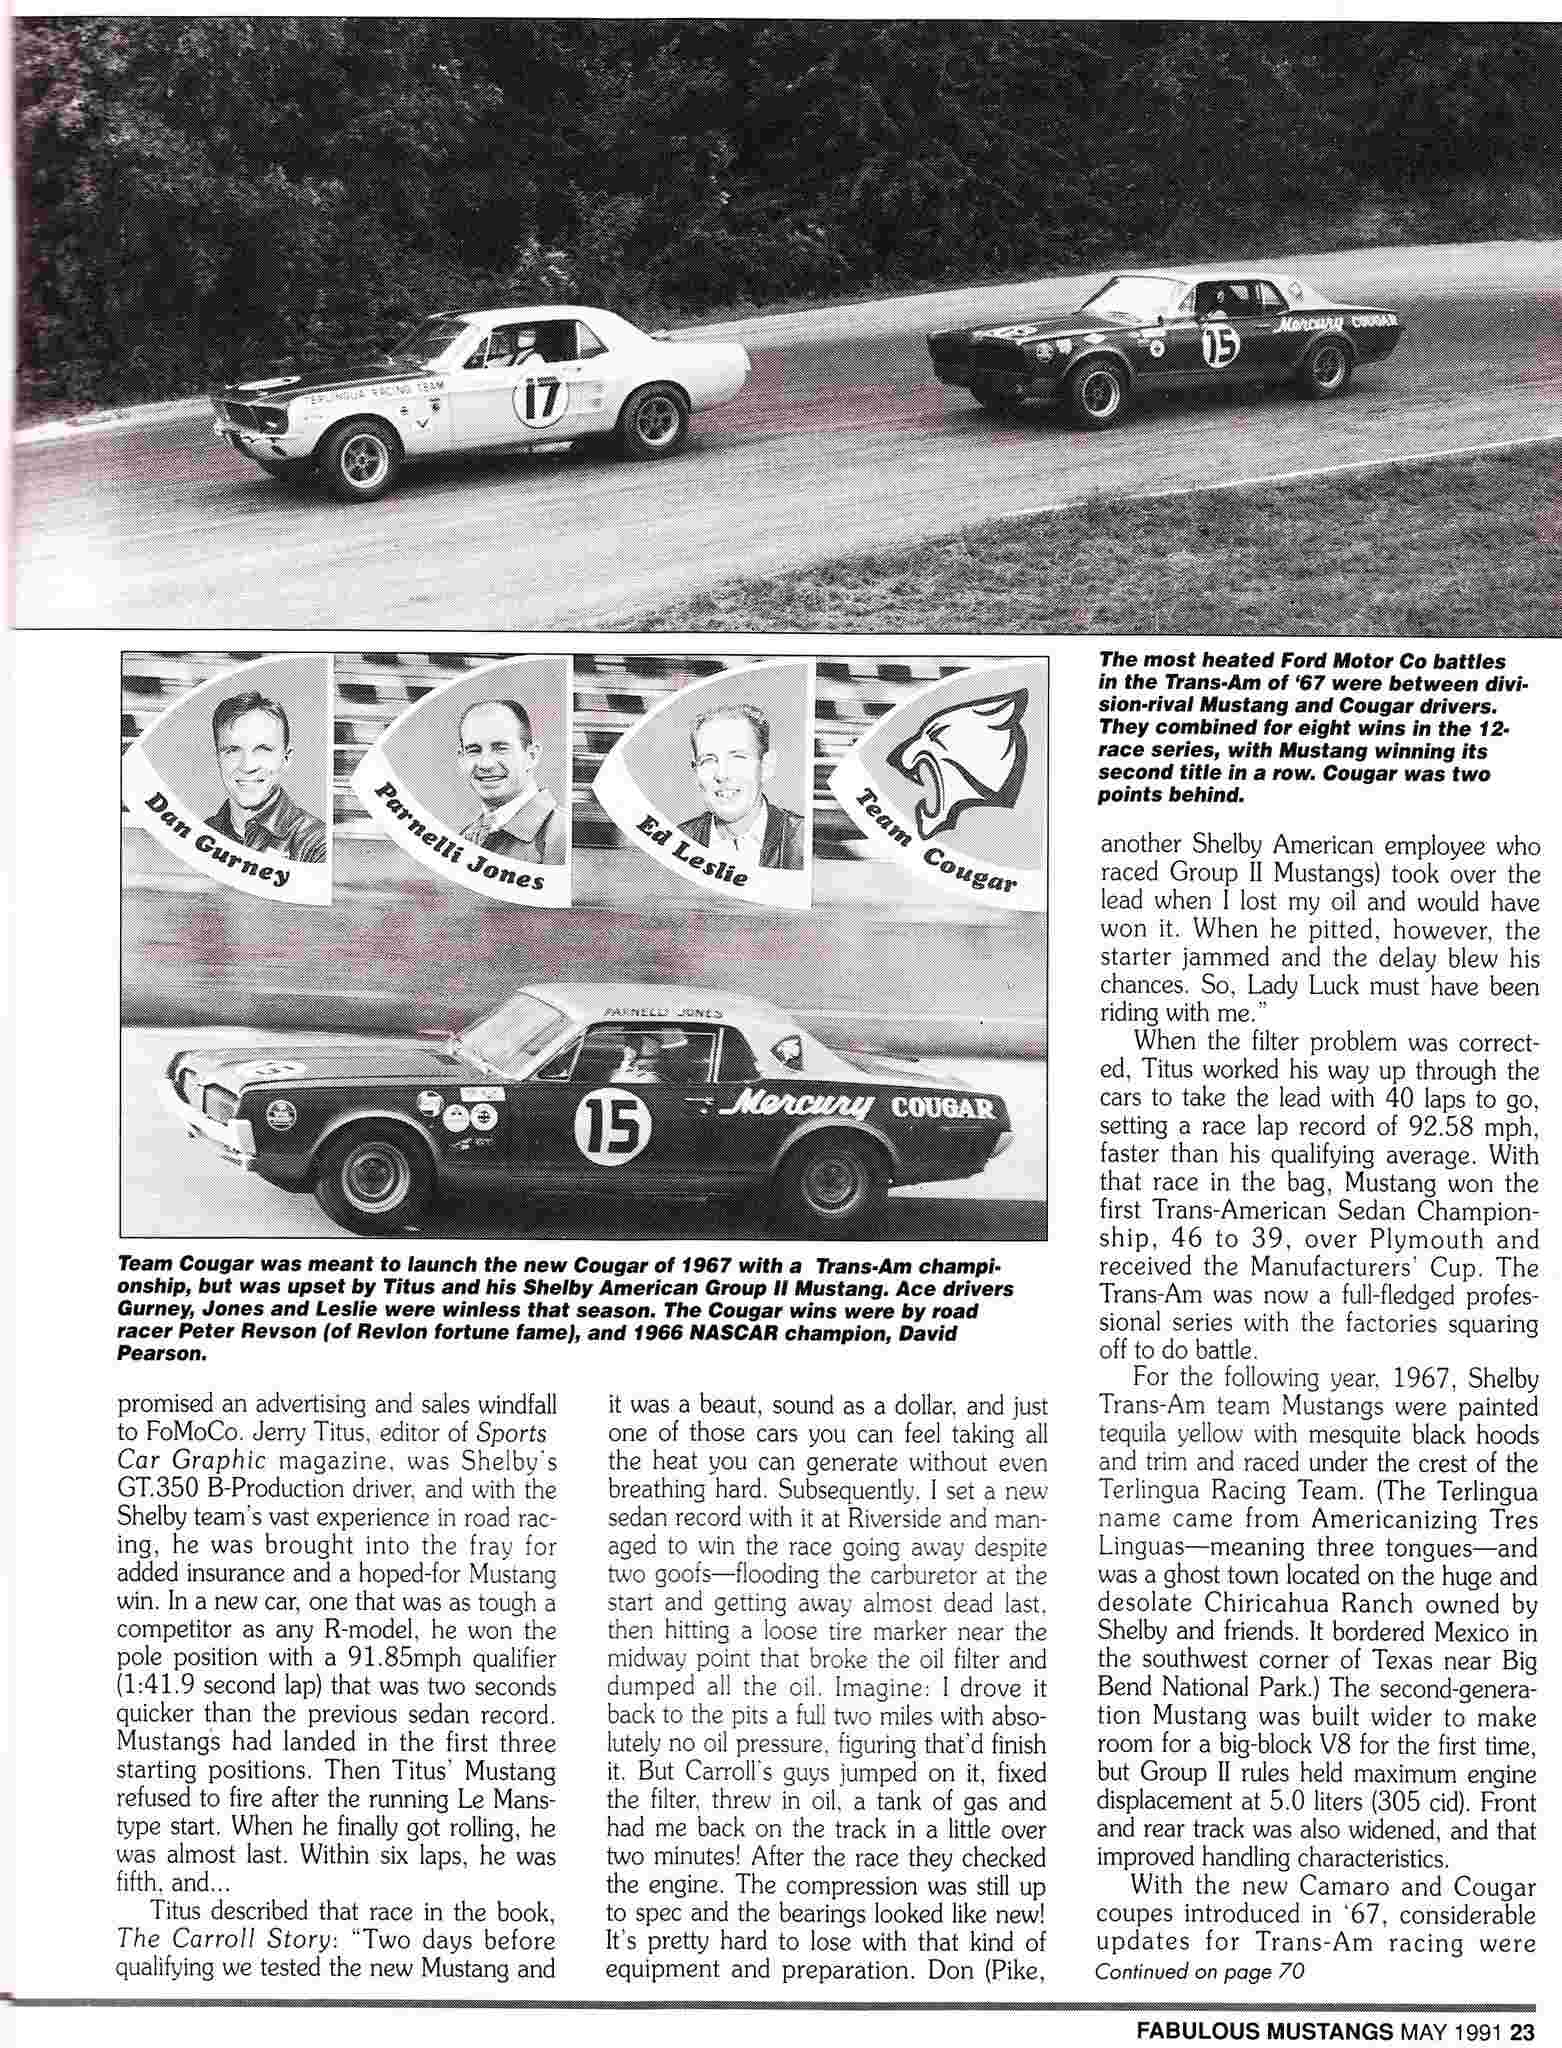 L'équipe de course Terlingua de Shelby-American en 1967 Titus_11